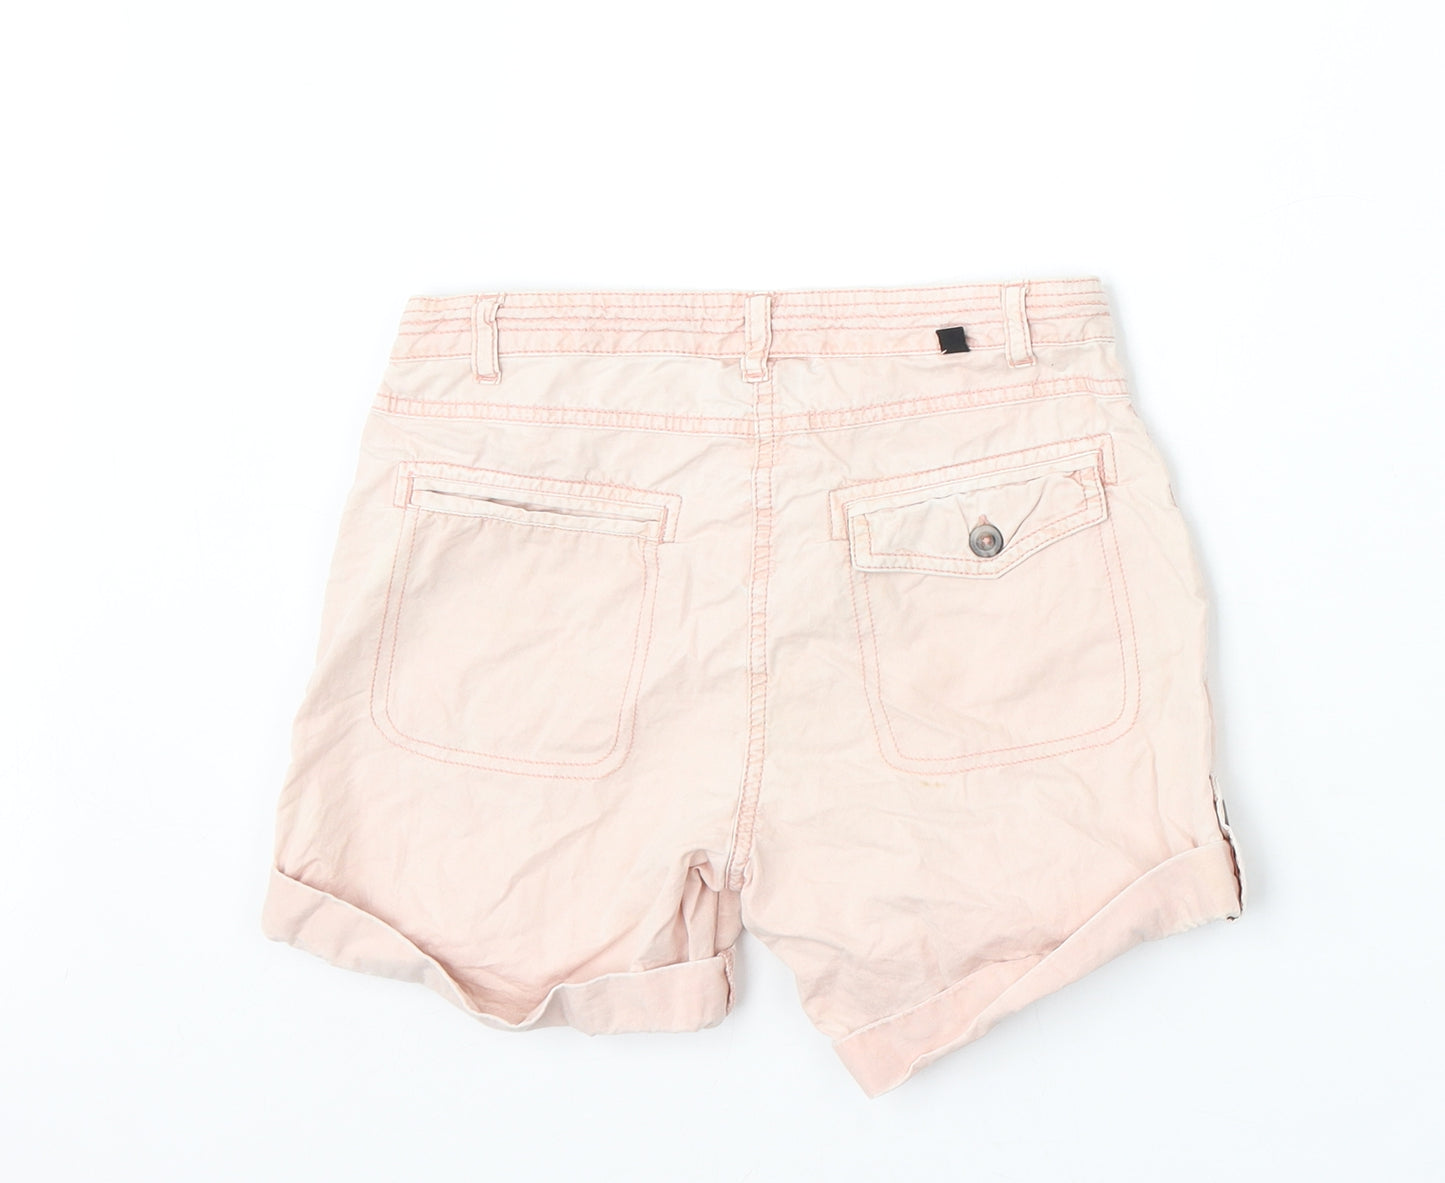 Preworn Girls Pink Cotton Bermuda Shorts Size 10 Years Regular